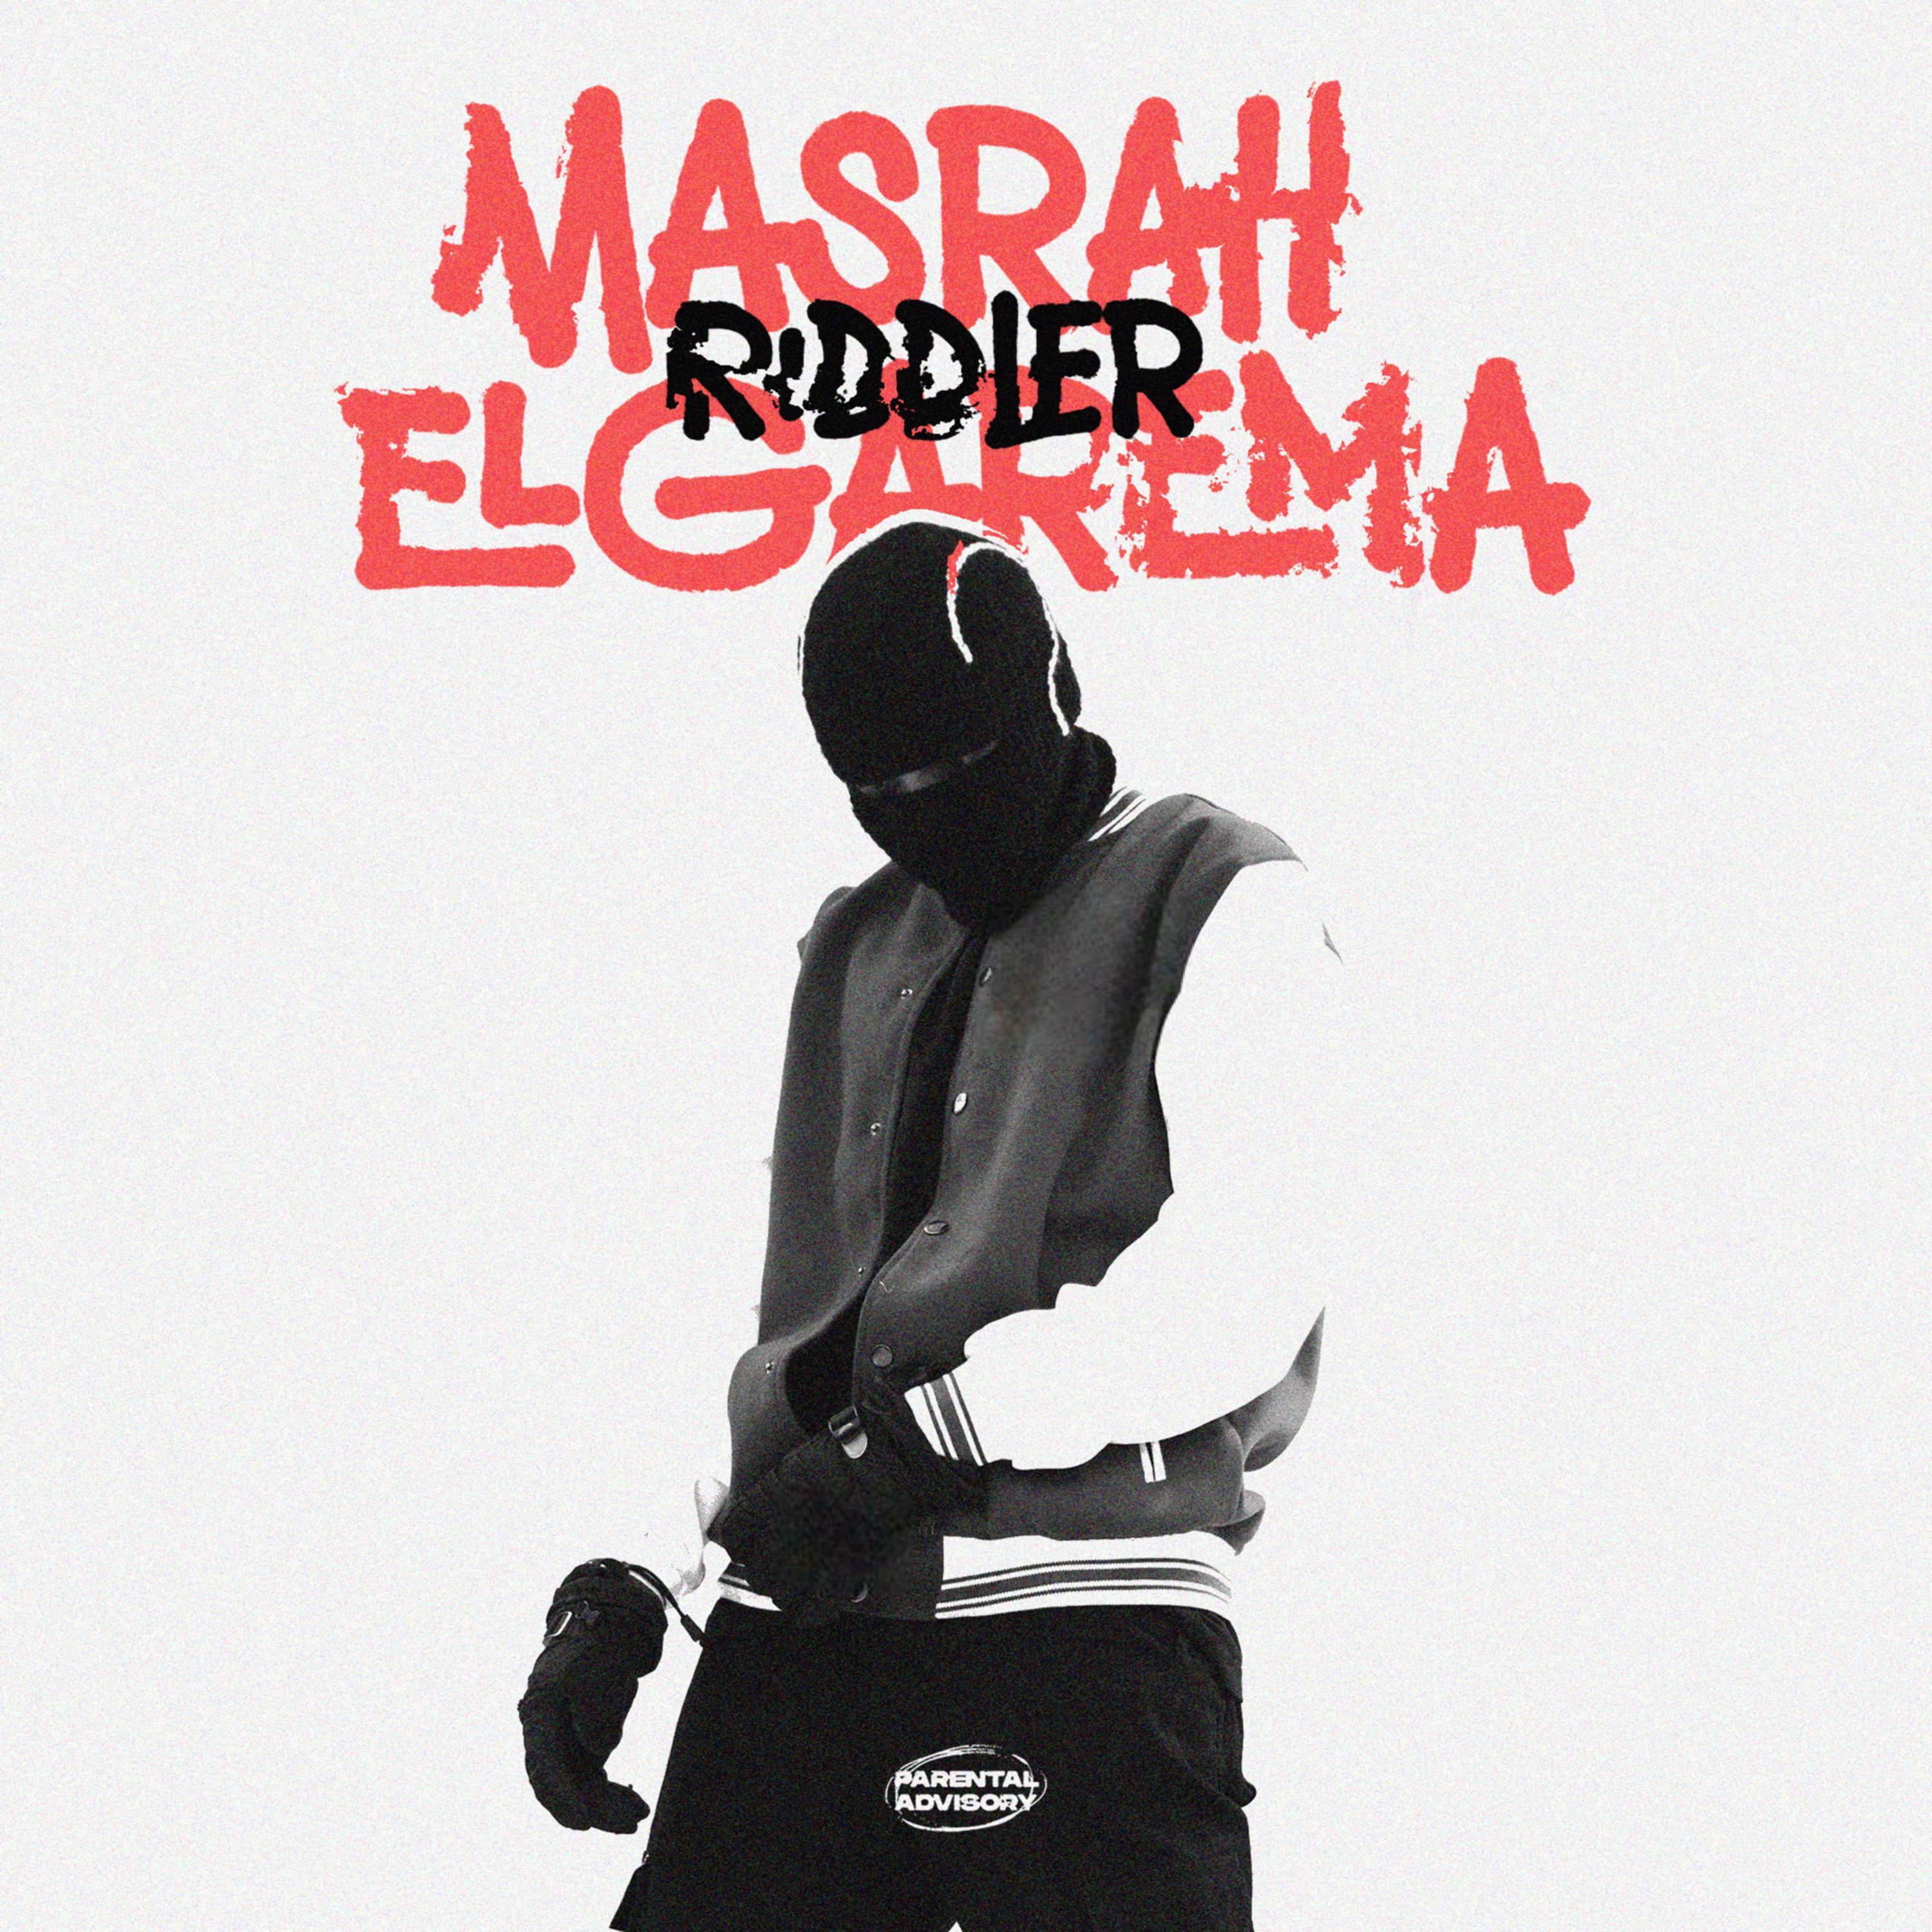 Riddler - MASRAH ELGAREMA